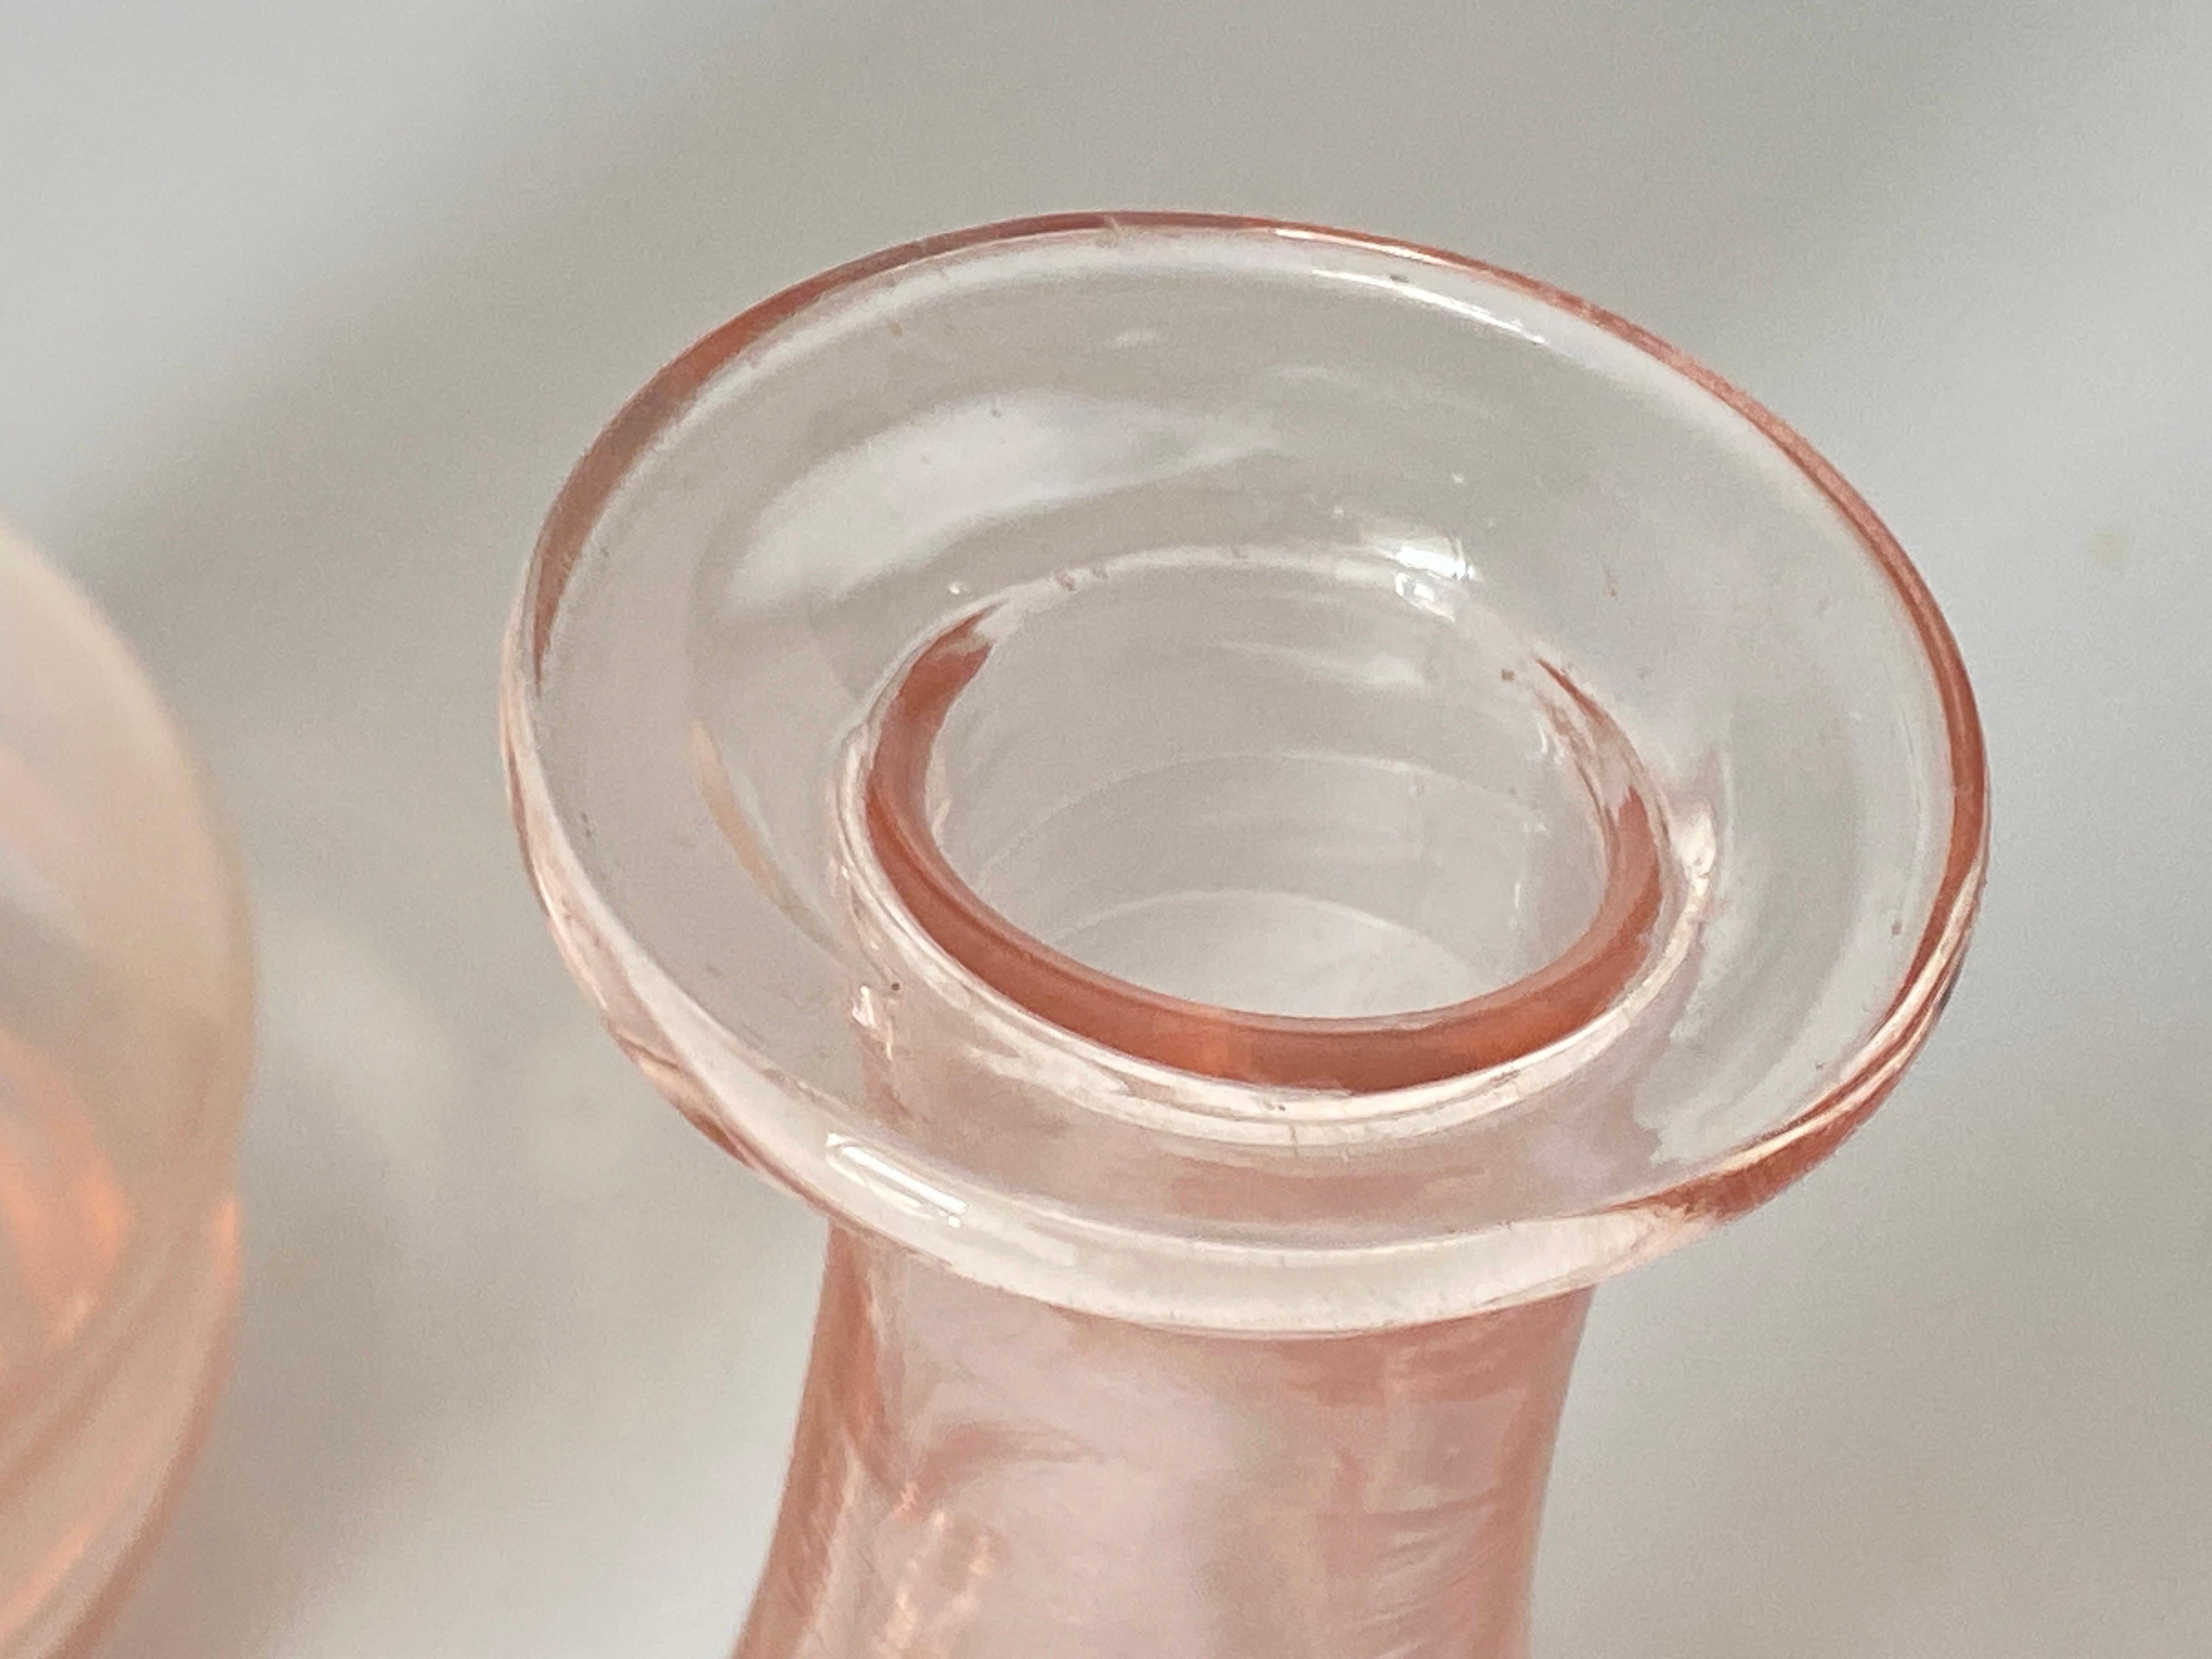 Diese dekorative Glasflasche wurde um 1940 in Frankreich hergestellt. Sie sind typisch für den Art-Déco-Stil und haben eine rosa Farbe.